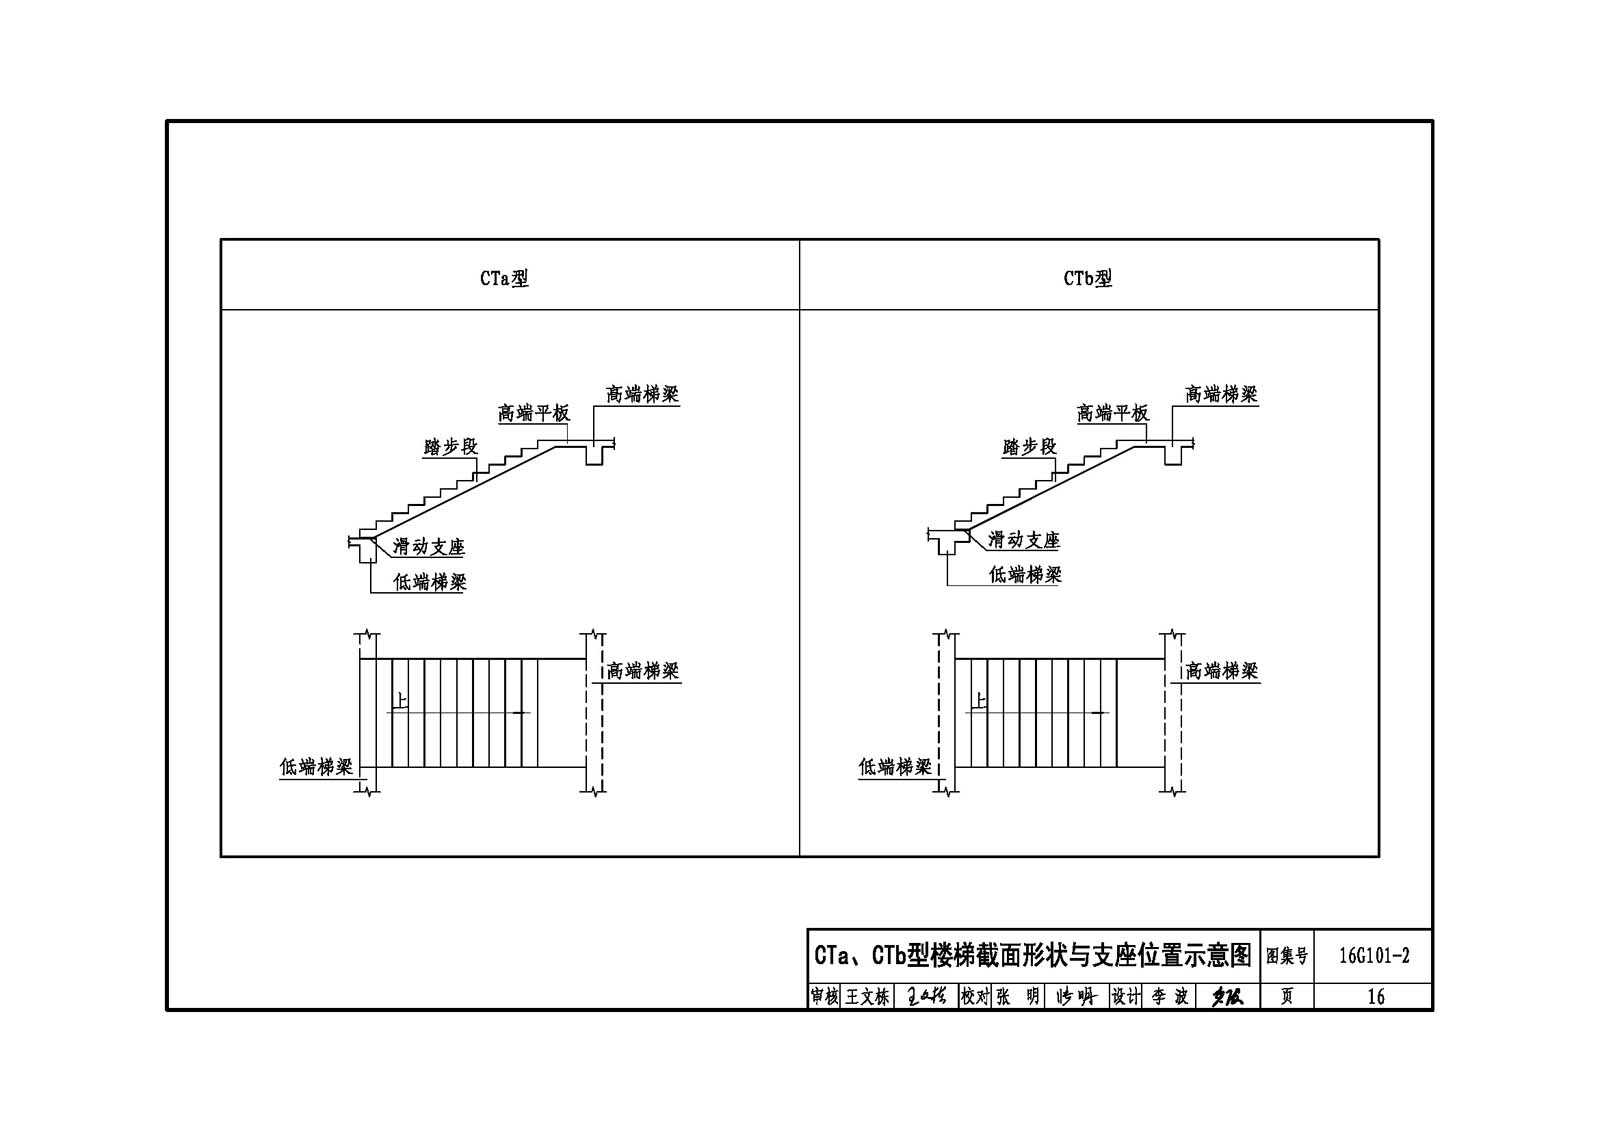 16g101-2:混凝土施工图平面整体表示方法制图规则